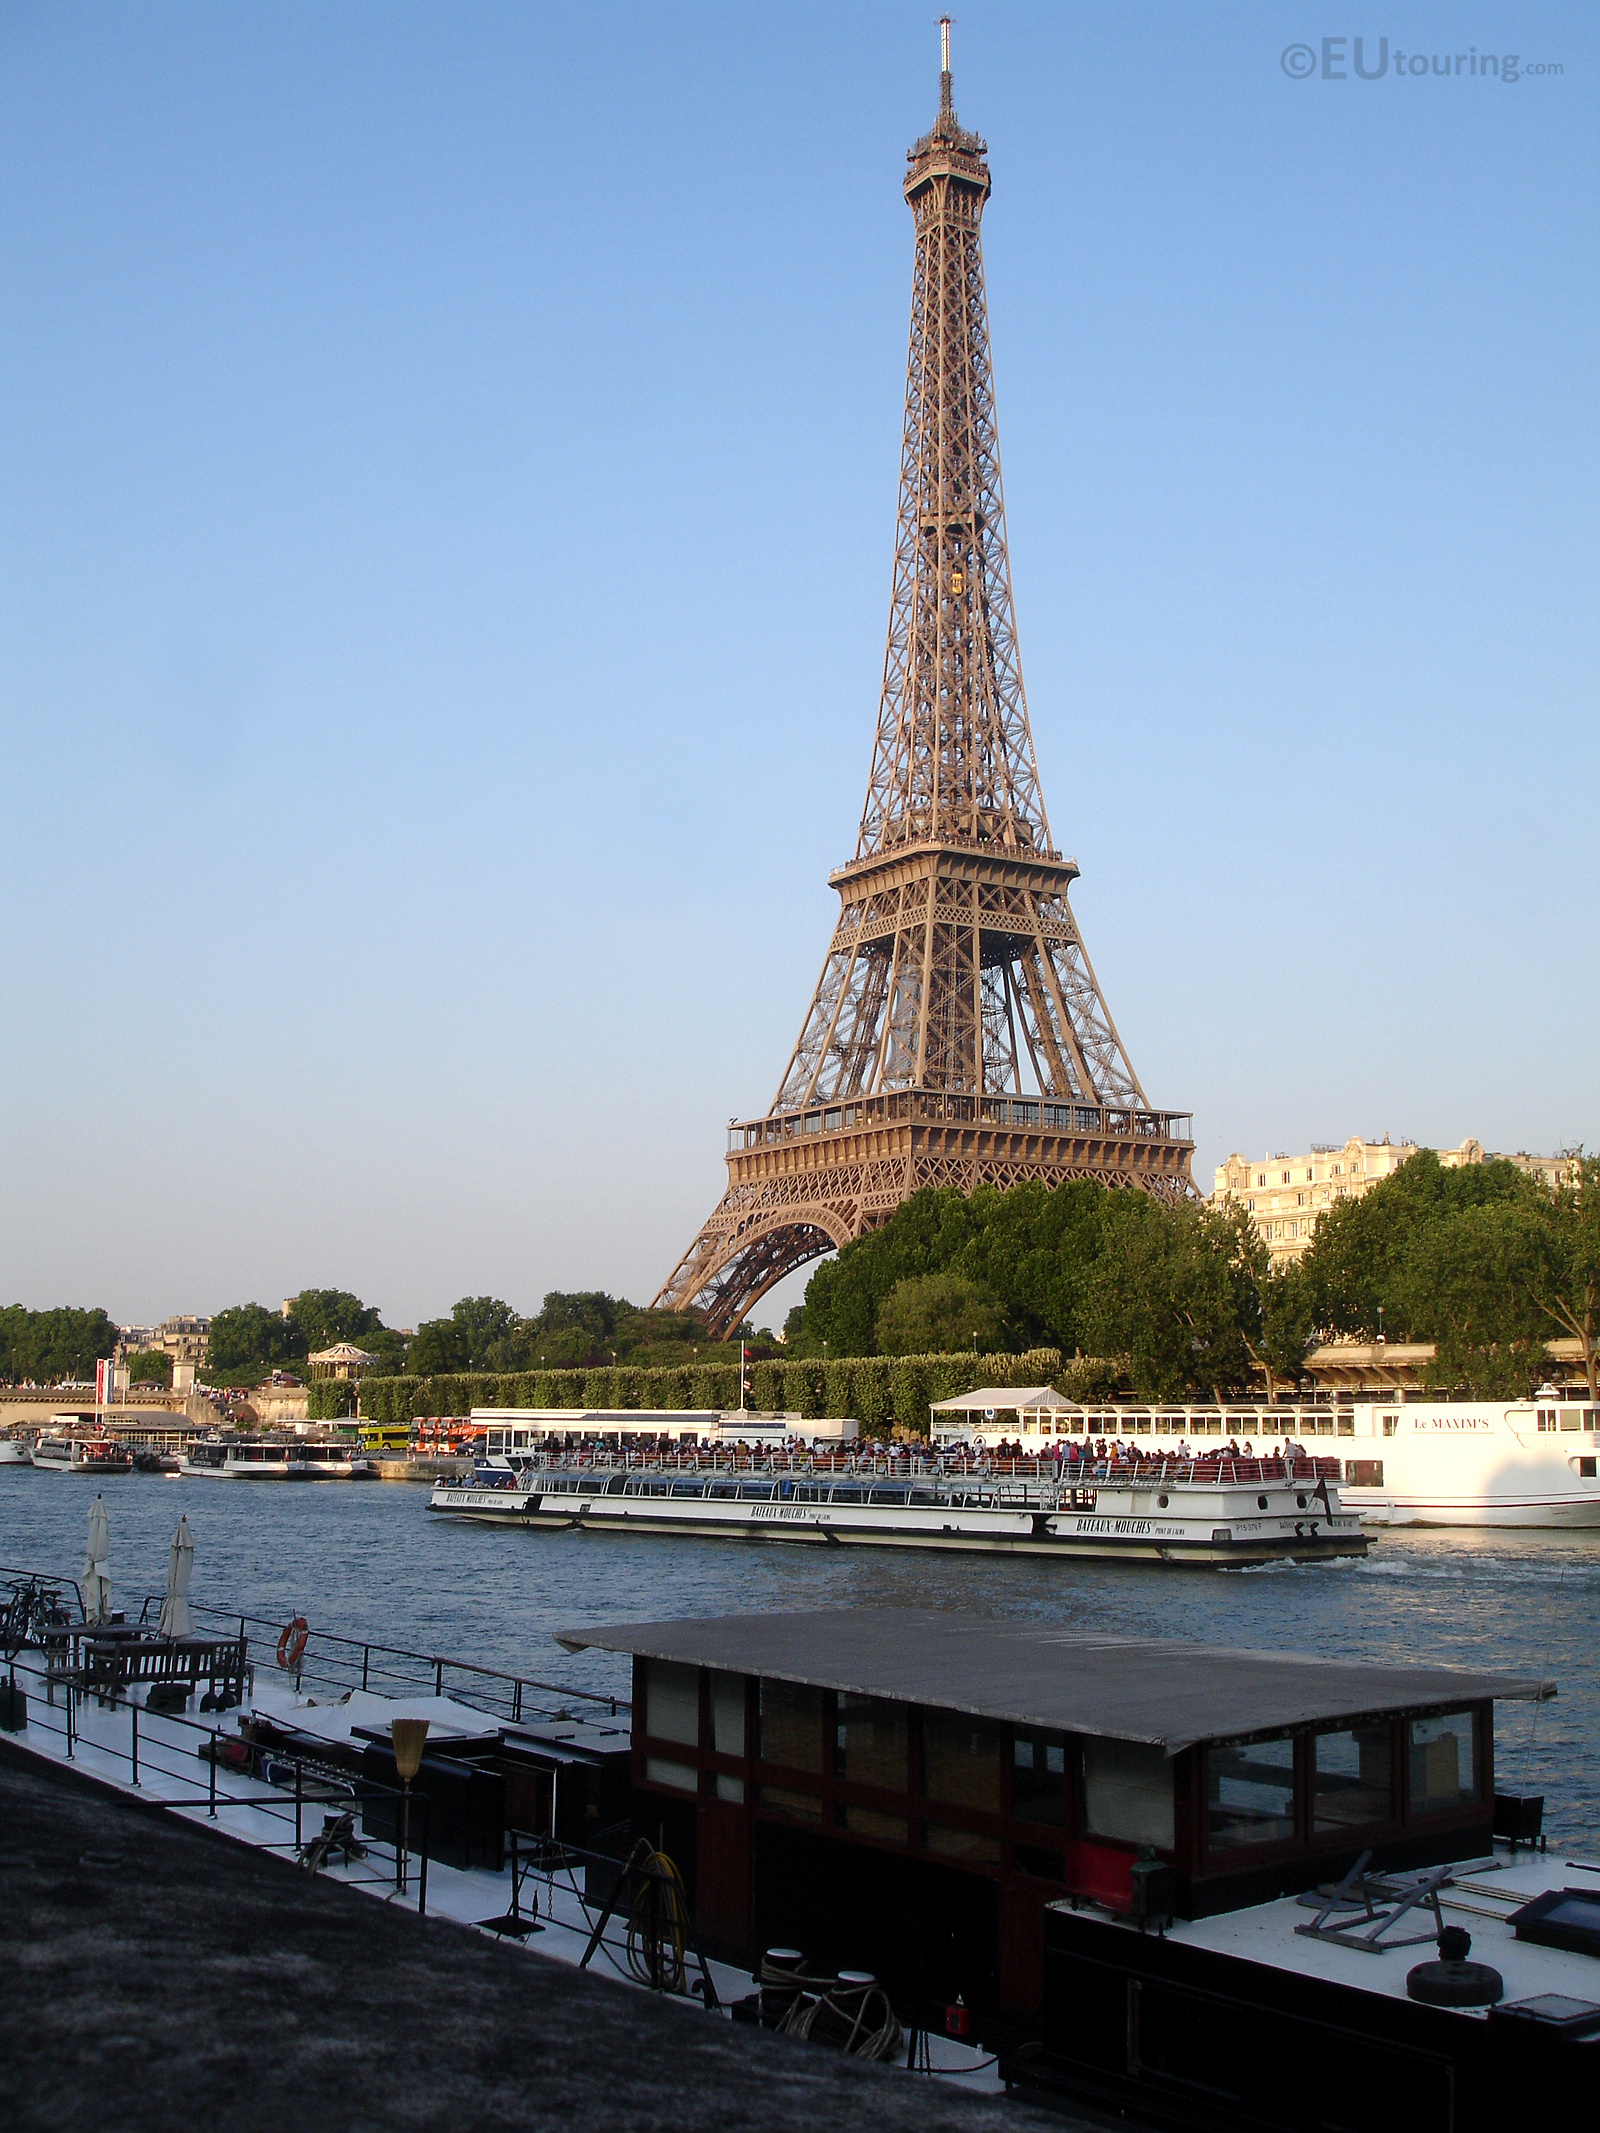 Bateaux Mouches passing the Eiffel